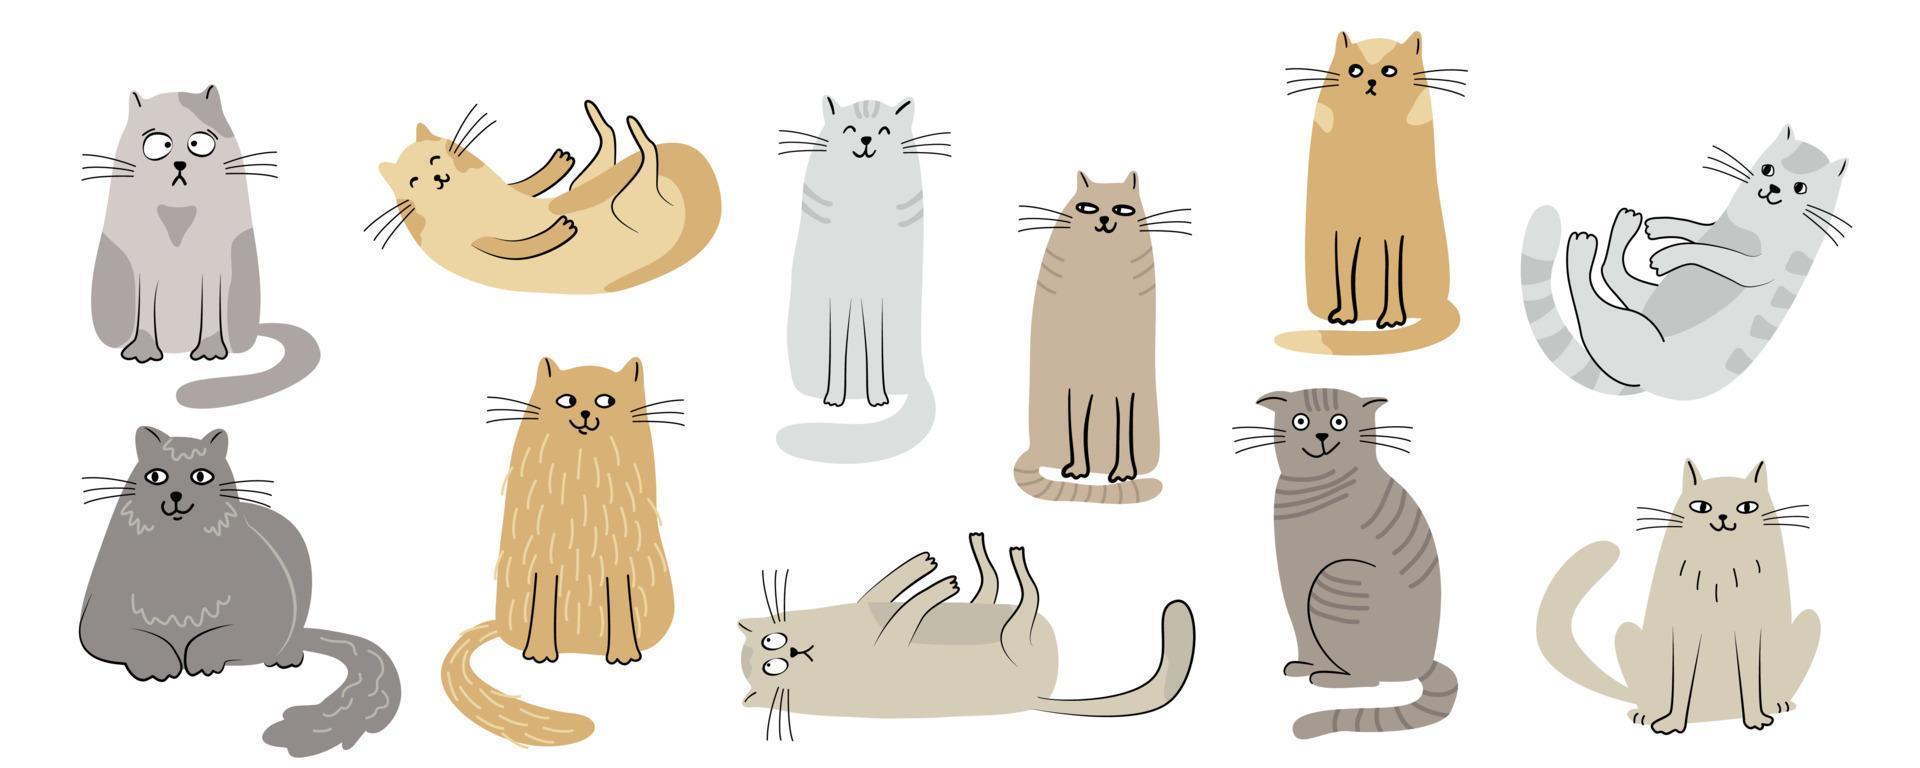 conjunto de gatos. ilustración vectorial plana dibujada a mano aislada sobre fondo blanco. divertidos personajes de animales de compañía. vector